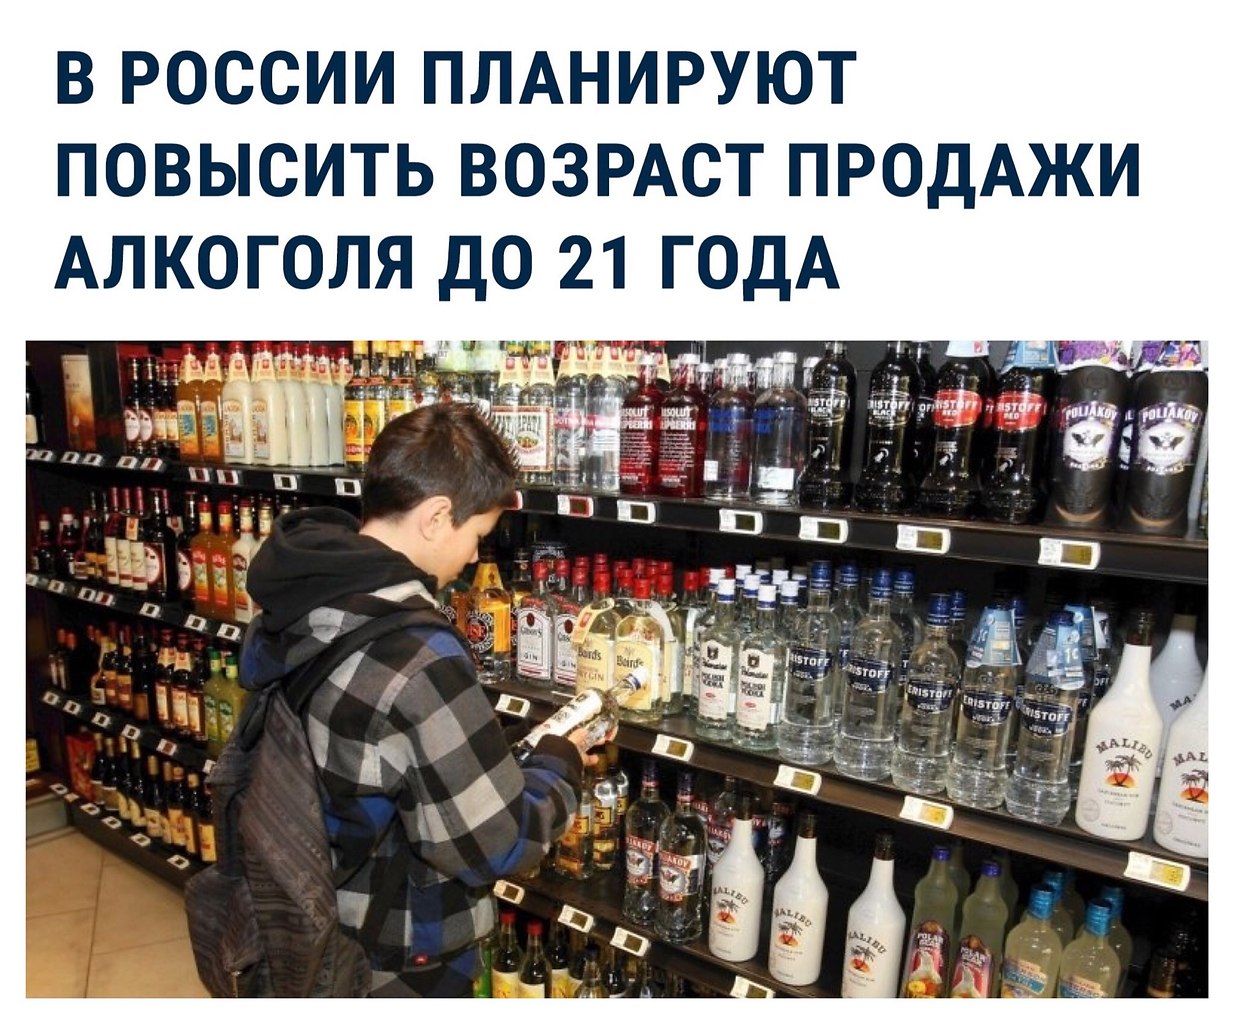 Пиво продажа со скольки. Со скольки продают алкоголь. С какого возраста продают алкоголь. Скакого возраста продевается алкоголь.